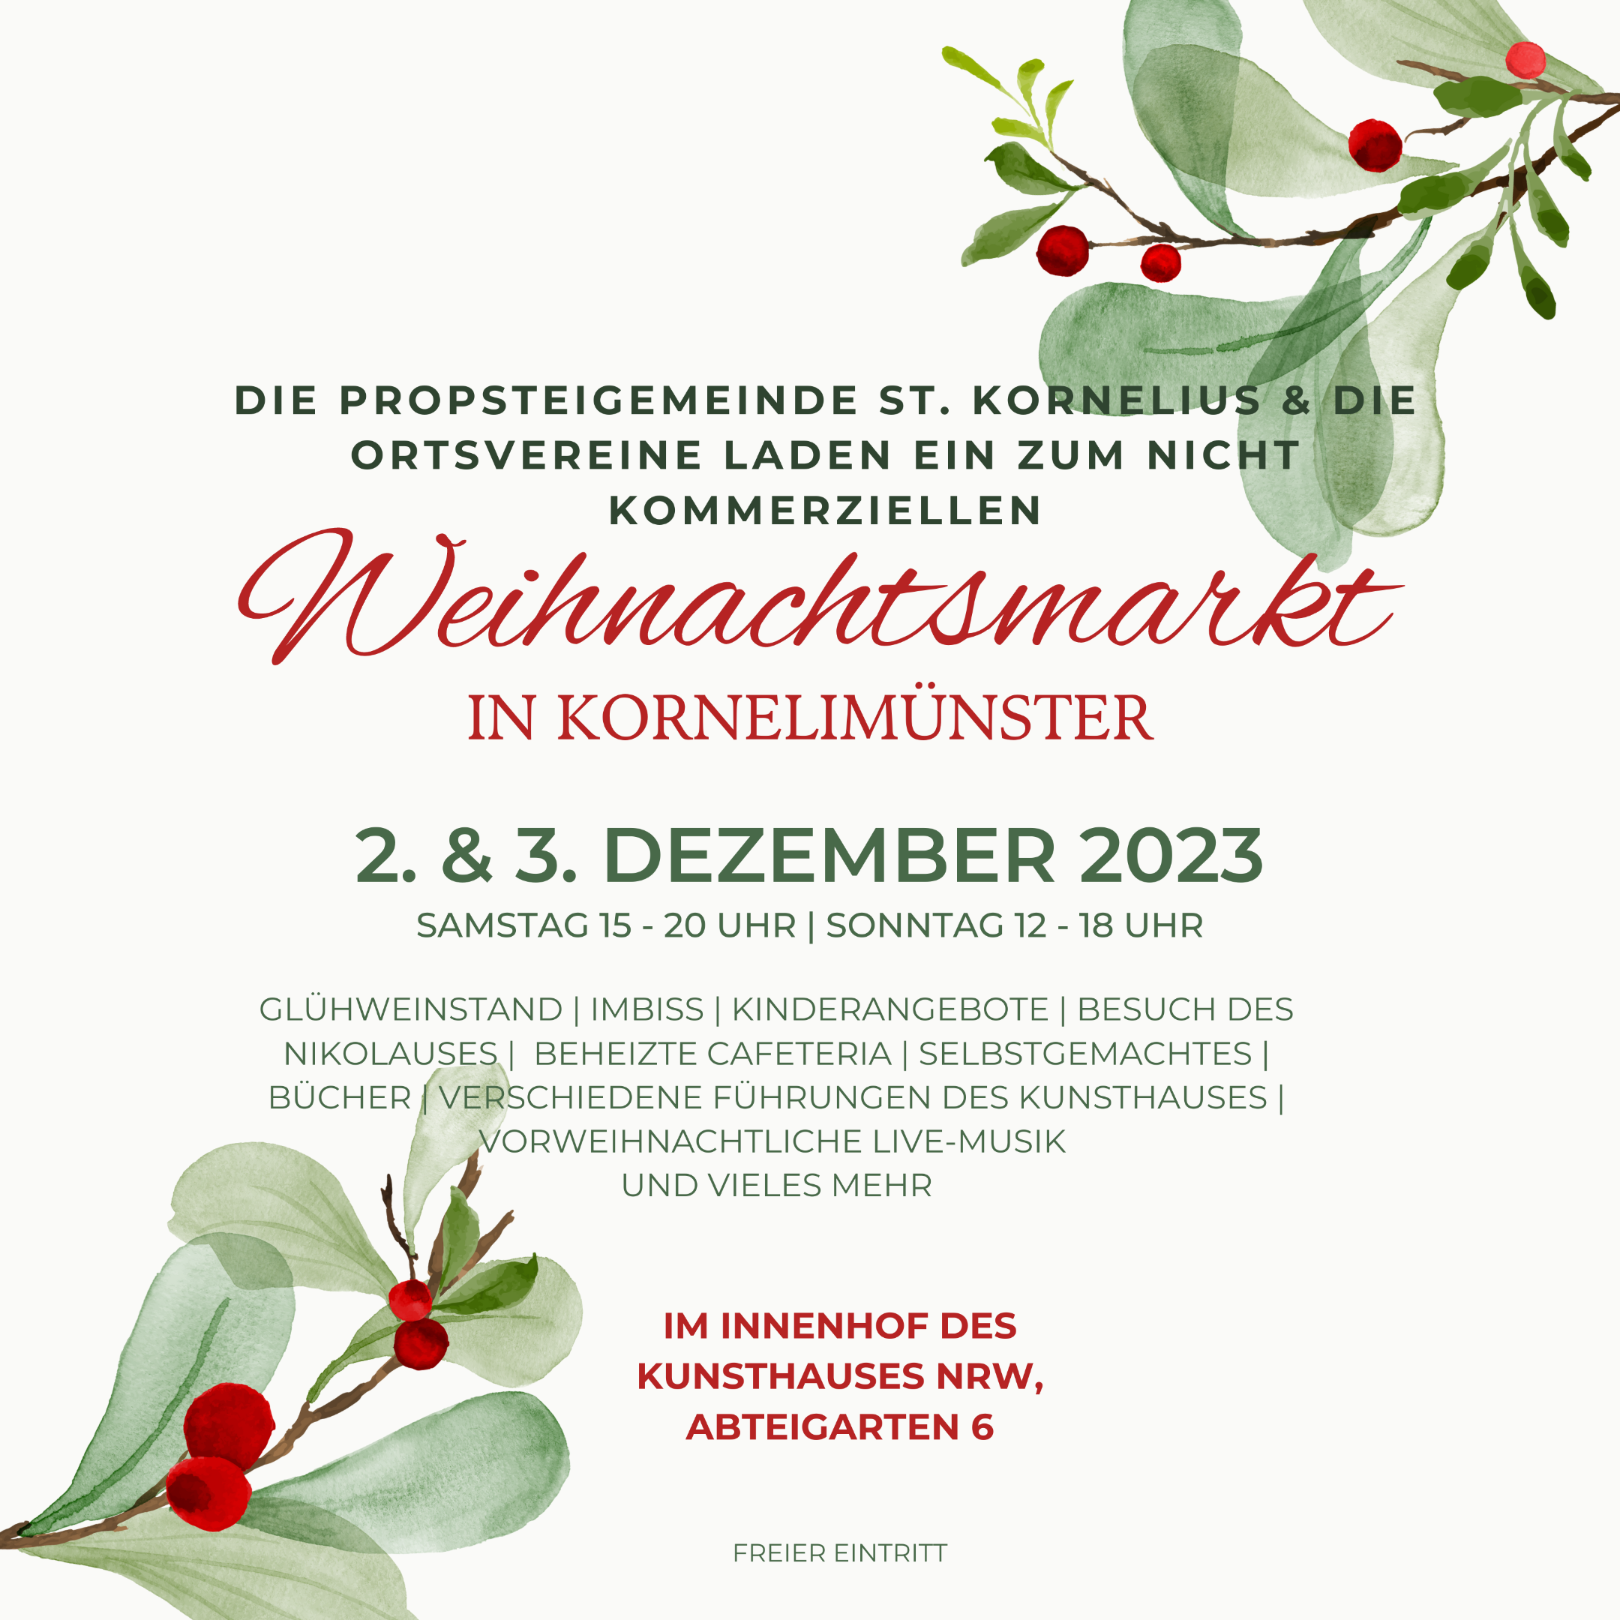 Weihnachtsmarkt Kornelimünster 2023 (c) Propsteigemeinde St. Kornelius